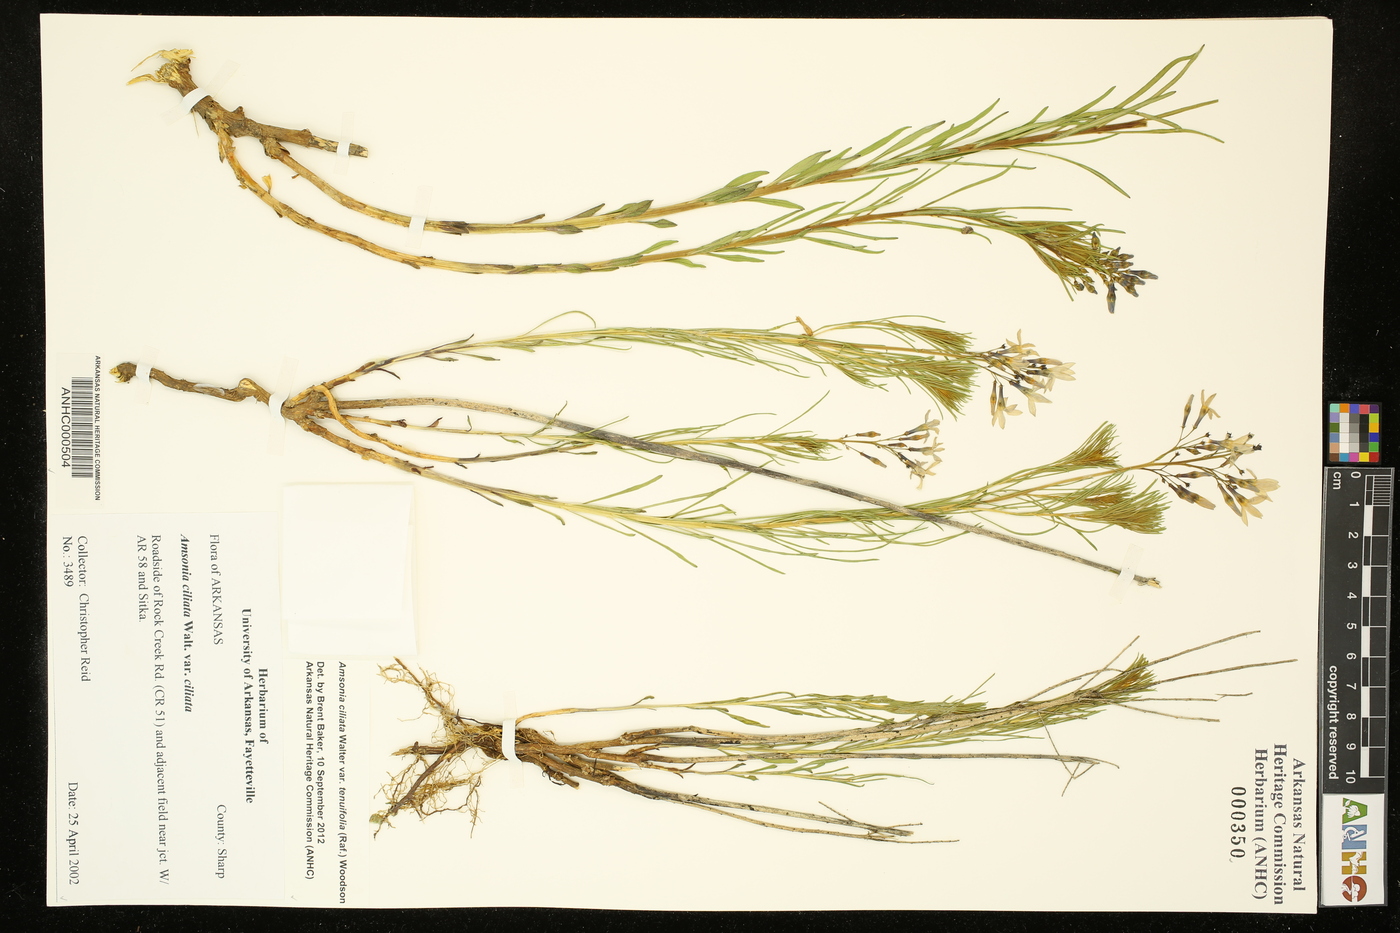 Amsonia ciliata var. tenuifolia image